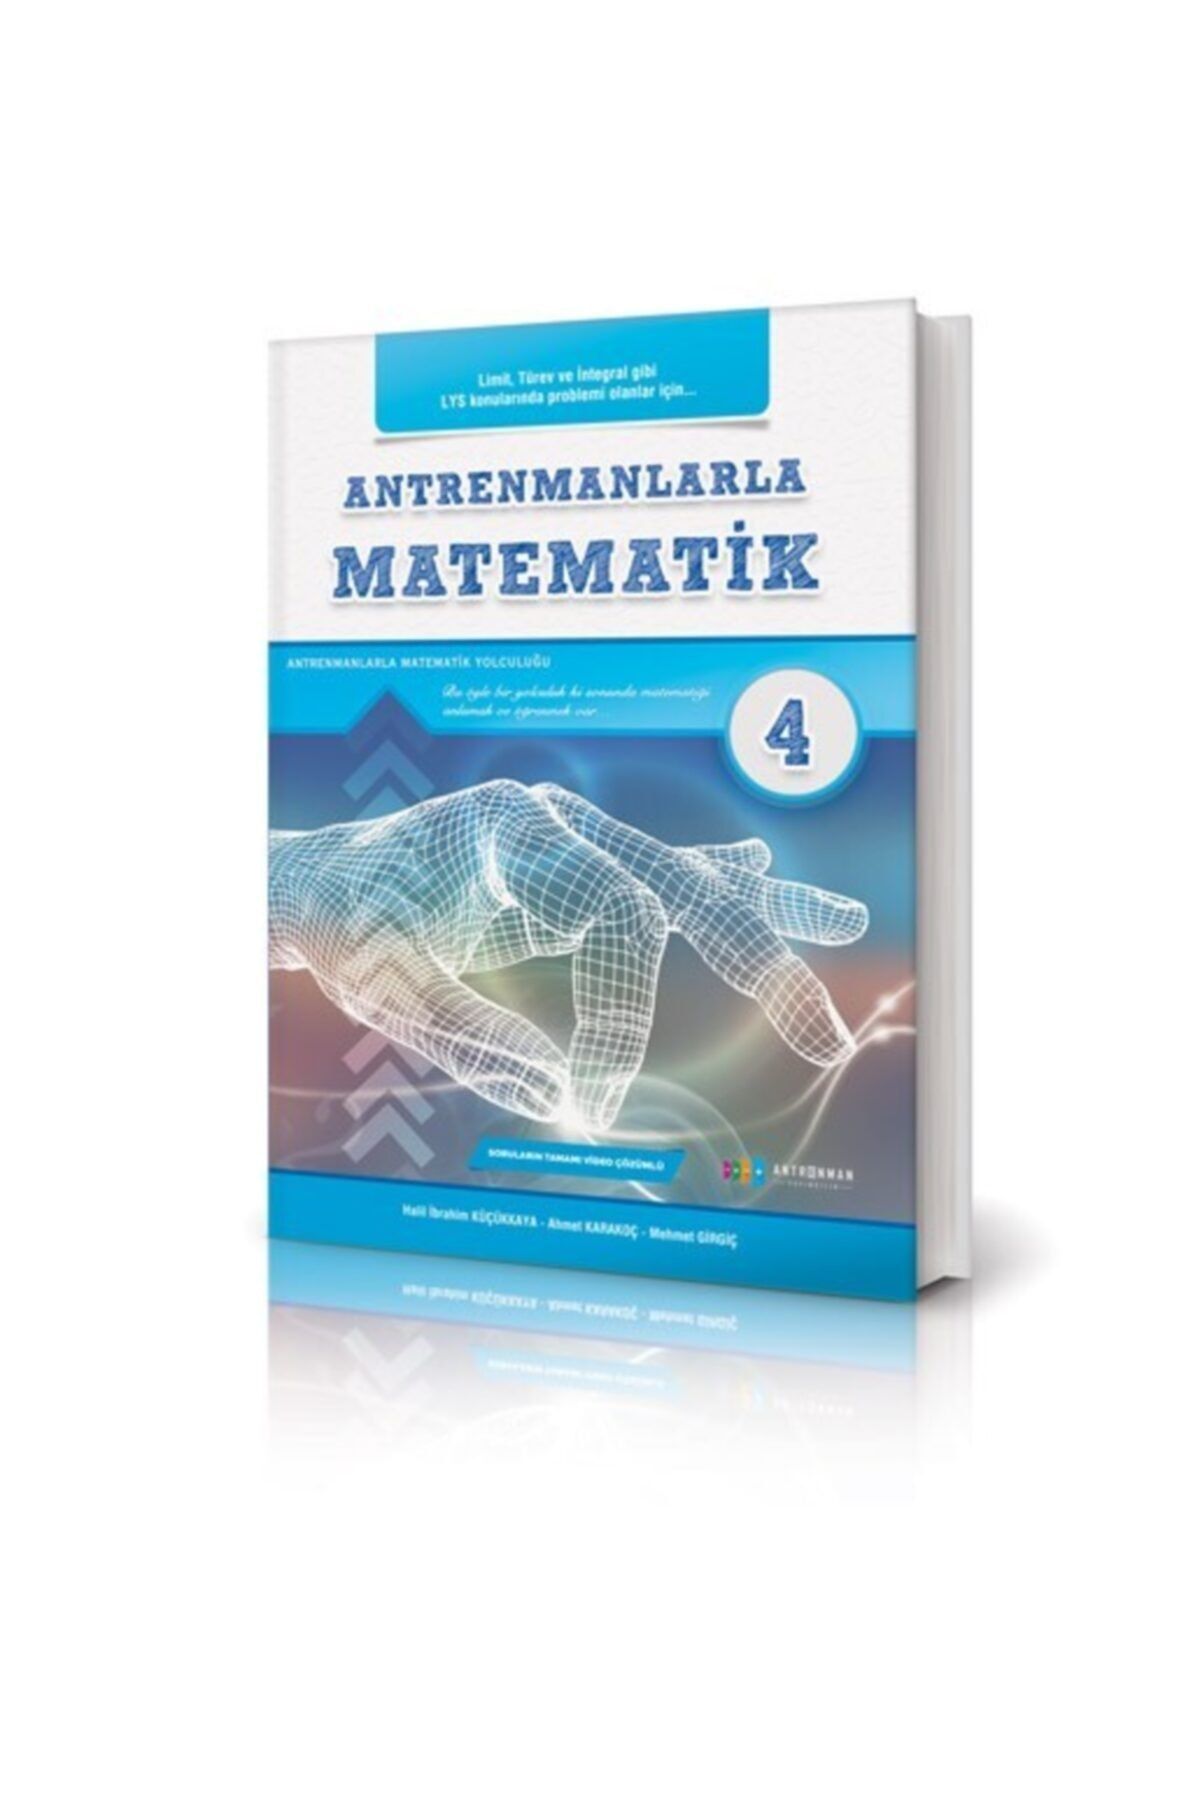 Antrenman Yayınları Antrenmanlarla Matematik 4 Antrenman Yayınları